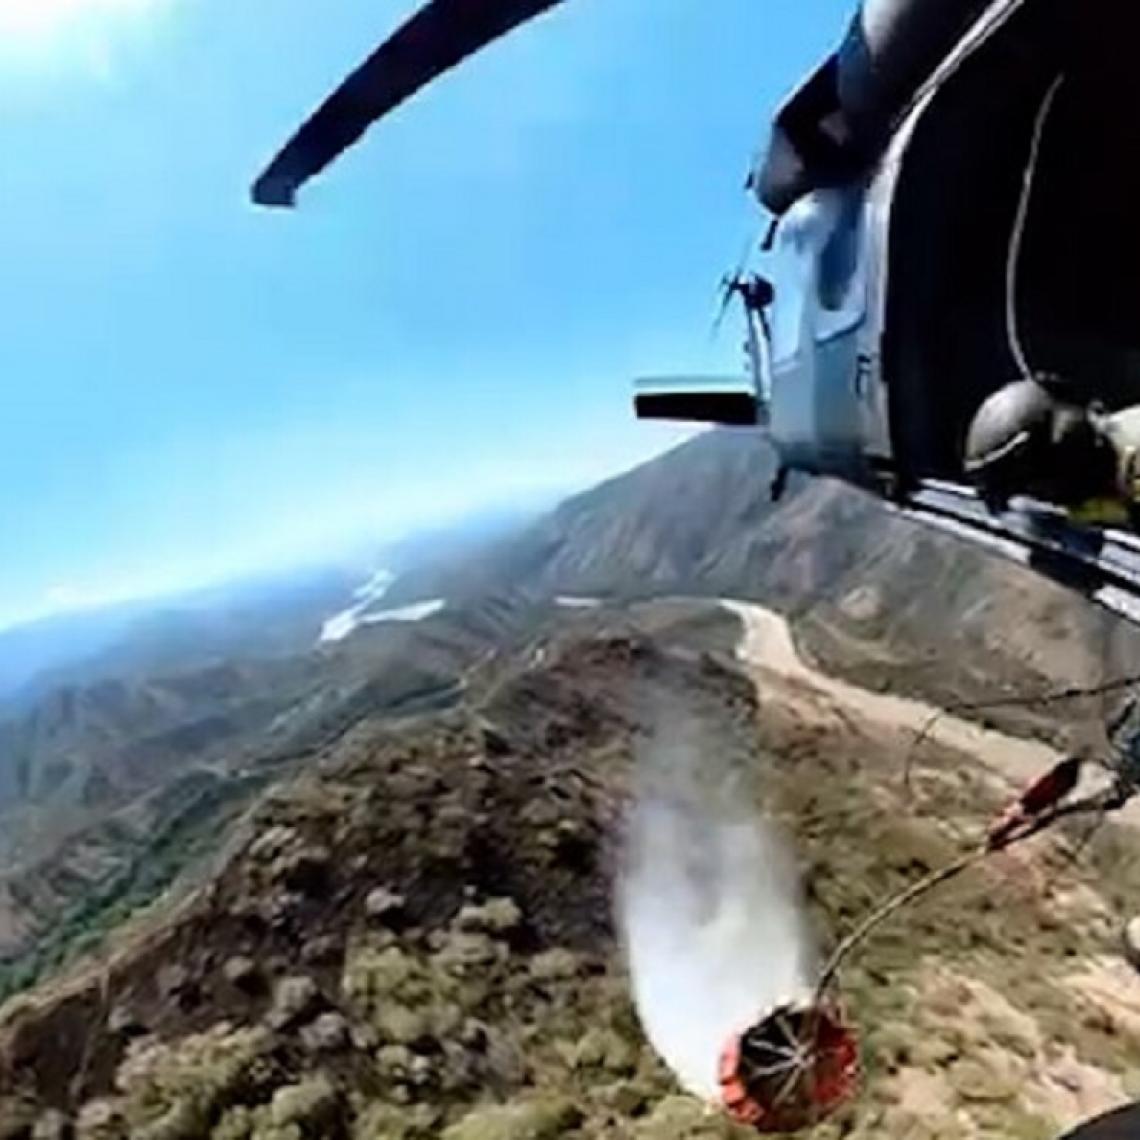  Controlado incendio en el occidente de Antioquia, con un helicóptero de su Fuerza Aérea Colombiana